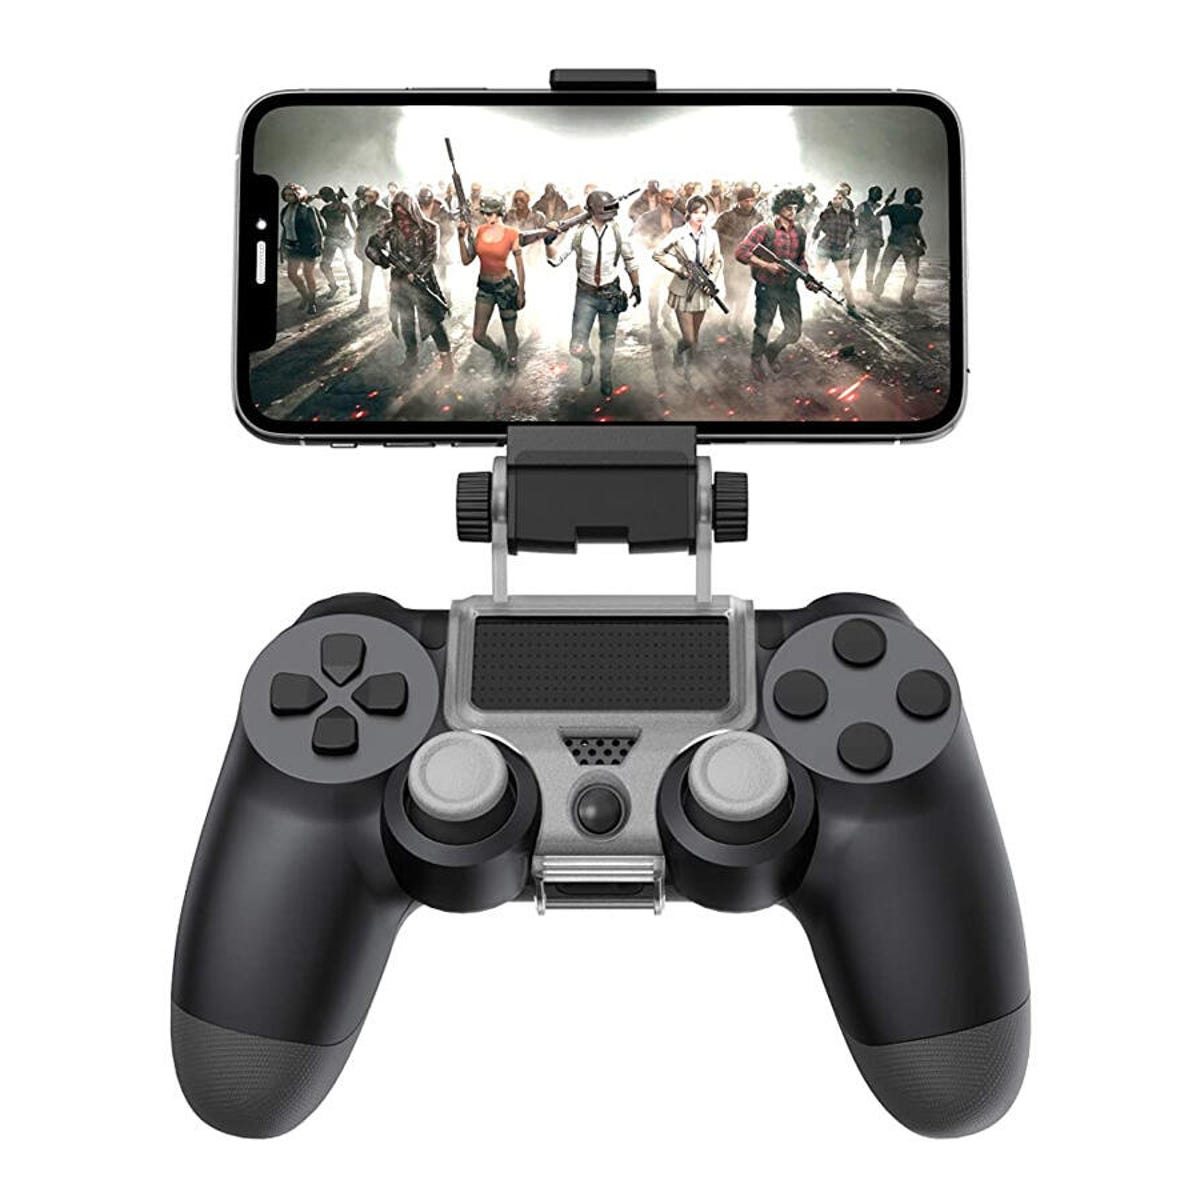 Bemiddelaar als resultaat compileren How to connect a PlayStation 4 controller to your iPhone | ZDNET